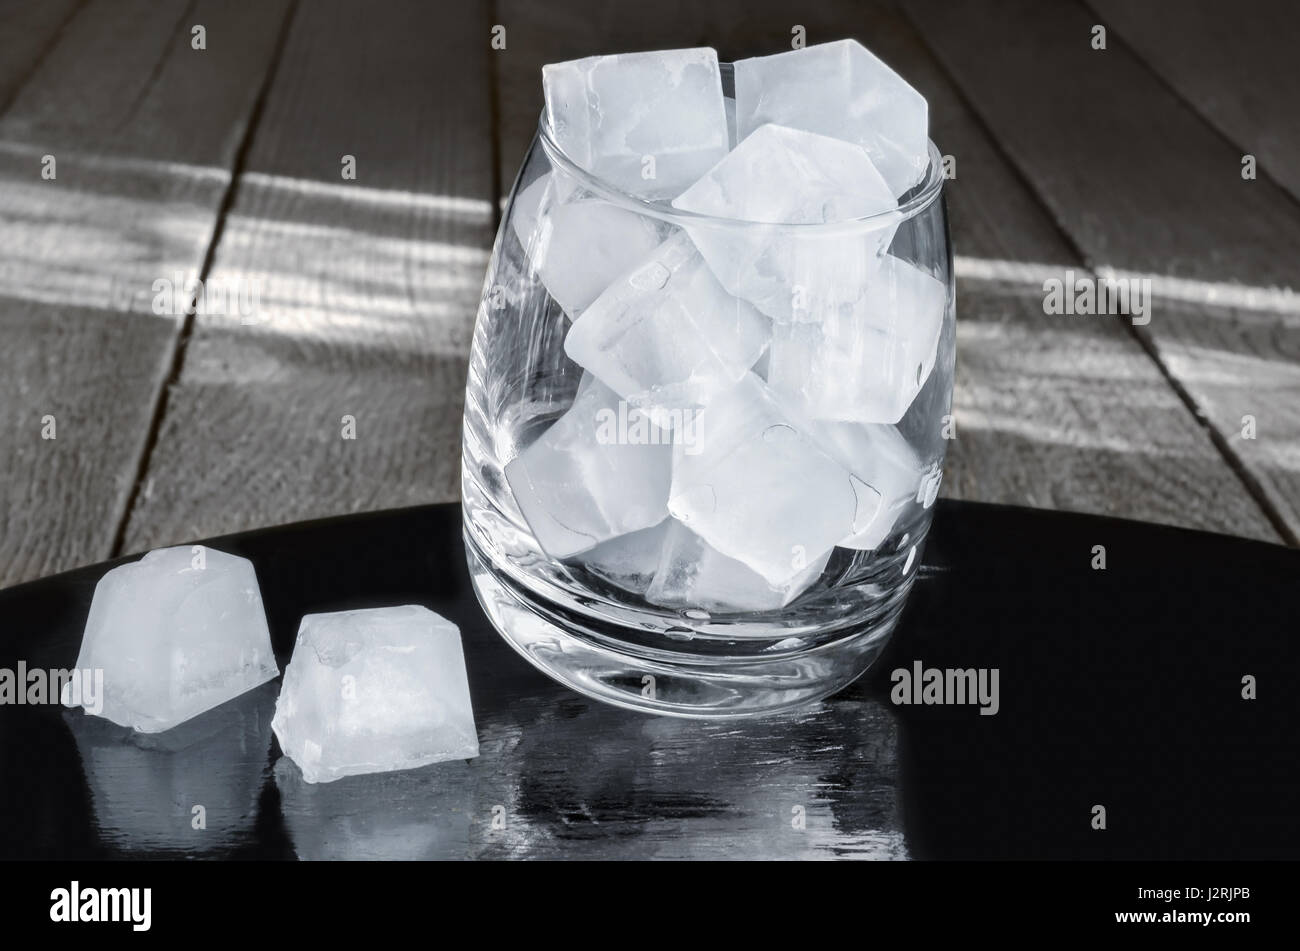 Des cubes de glace dans un verre, fond en bois gris Banque D'Images